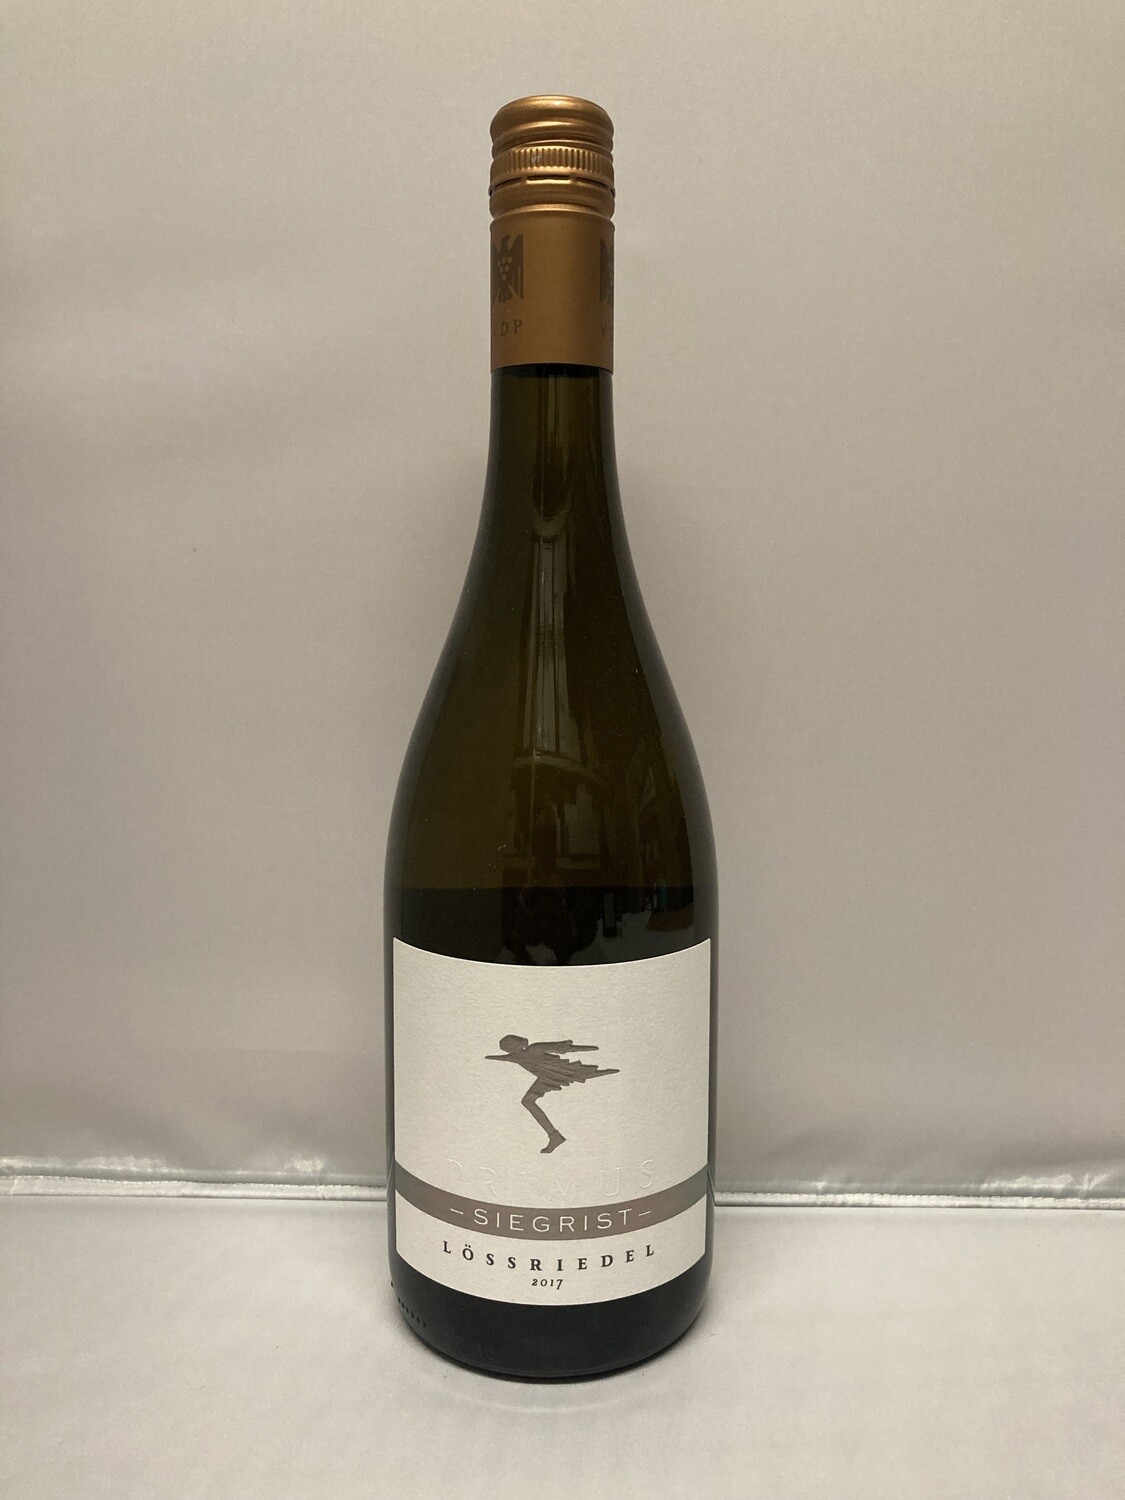 Pinot blanc-2017 droog  Lössriedel -Siegrist (Pfalz)